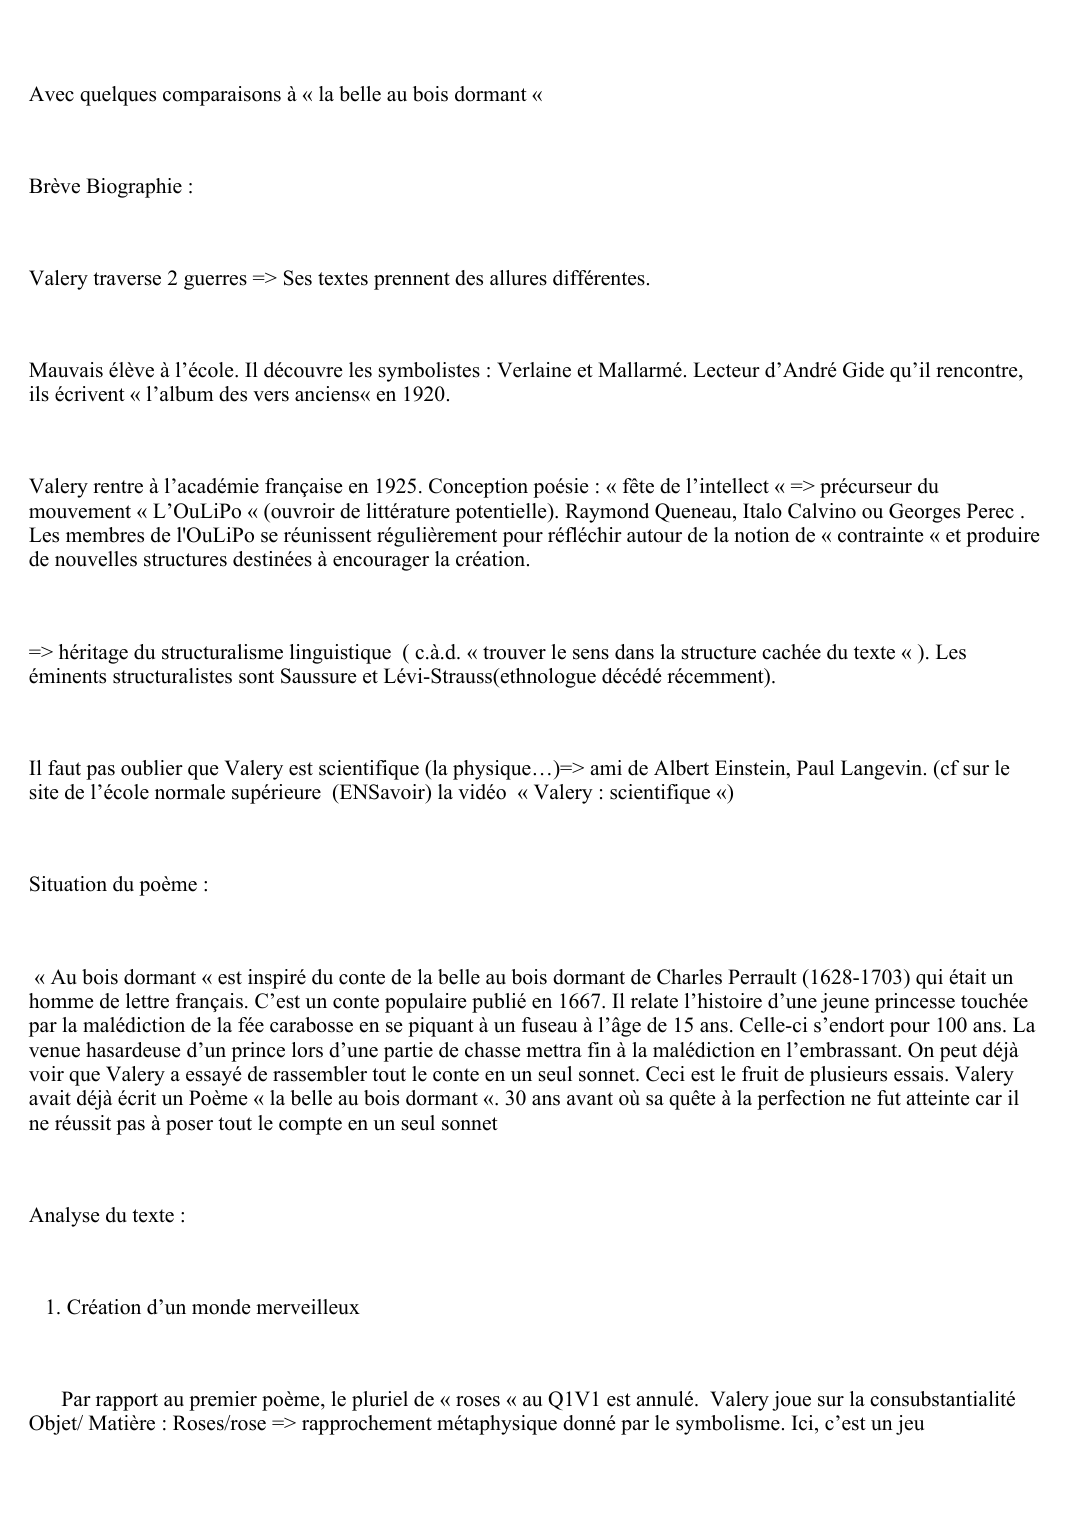 Prévisualisation du document « Au bois dormant »
Paul Valéry